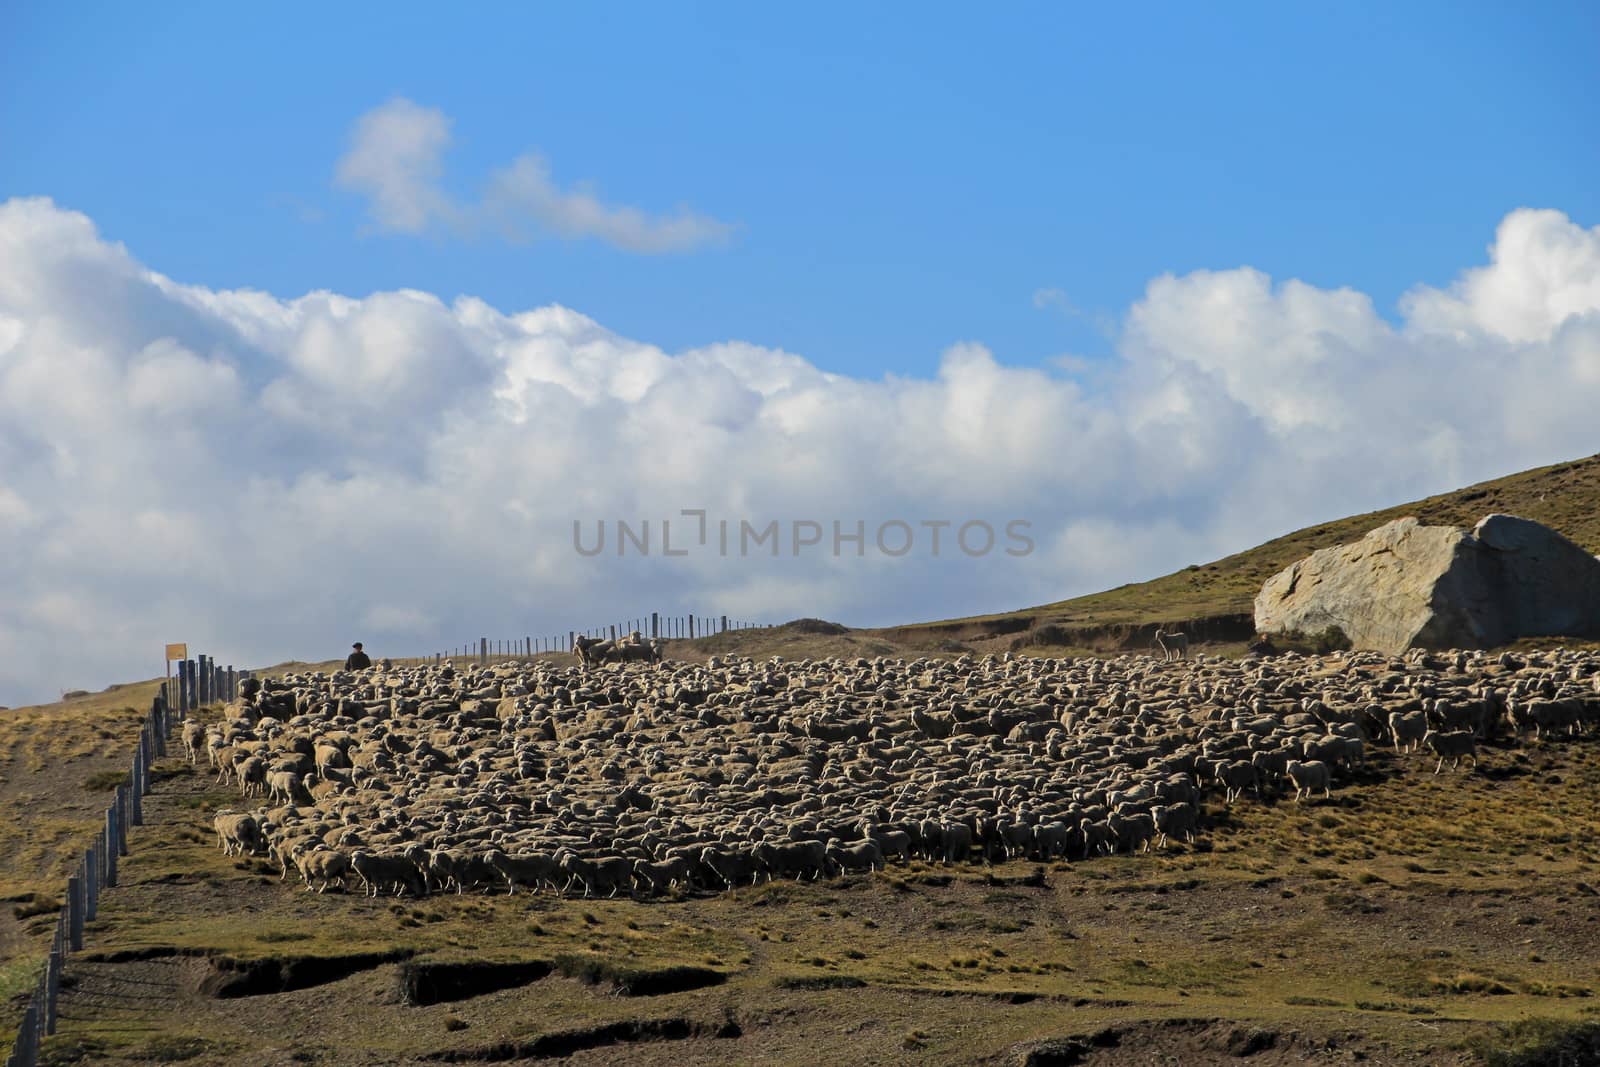 Herd of sheep near Porvenir, Tierra Del Fuego, Patagonia, Chile